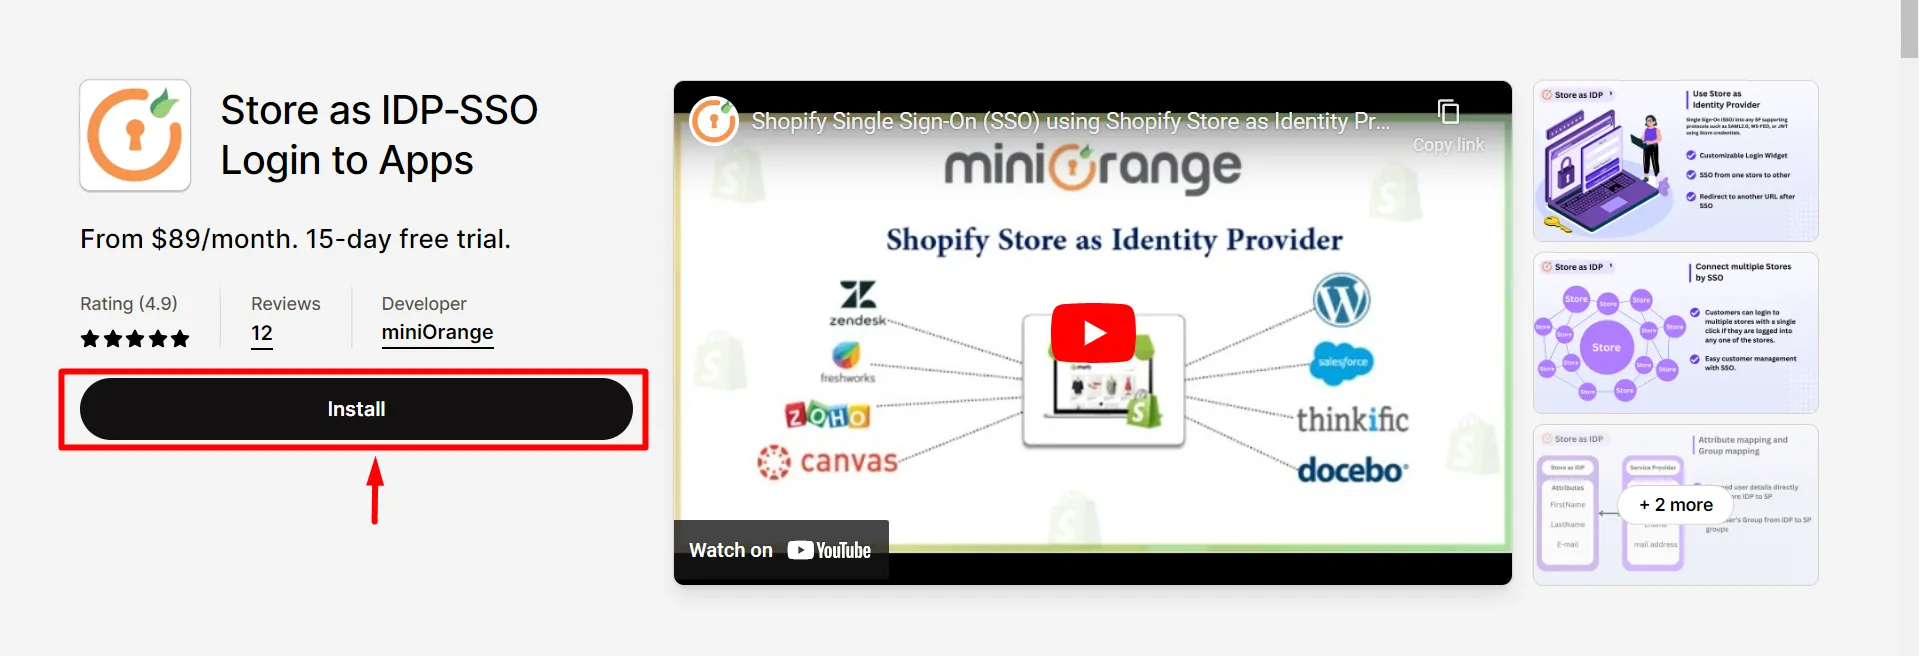 Shopify als IDP – Melden Sie sich mit Shopify-Anmeldeinformationen an – installieren Sie die Anwendung